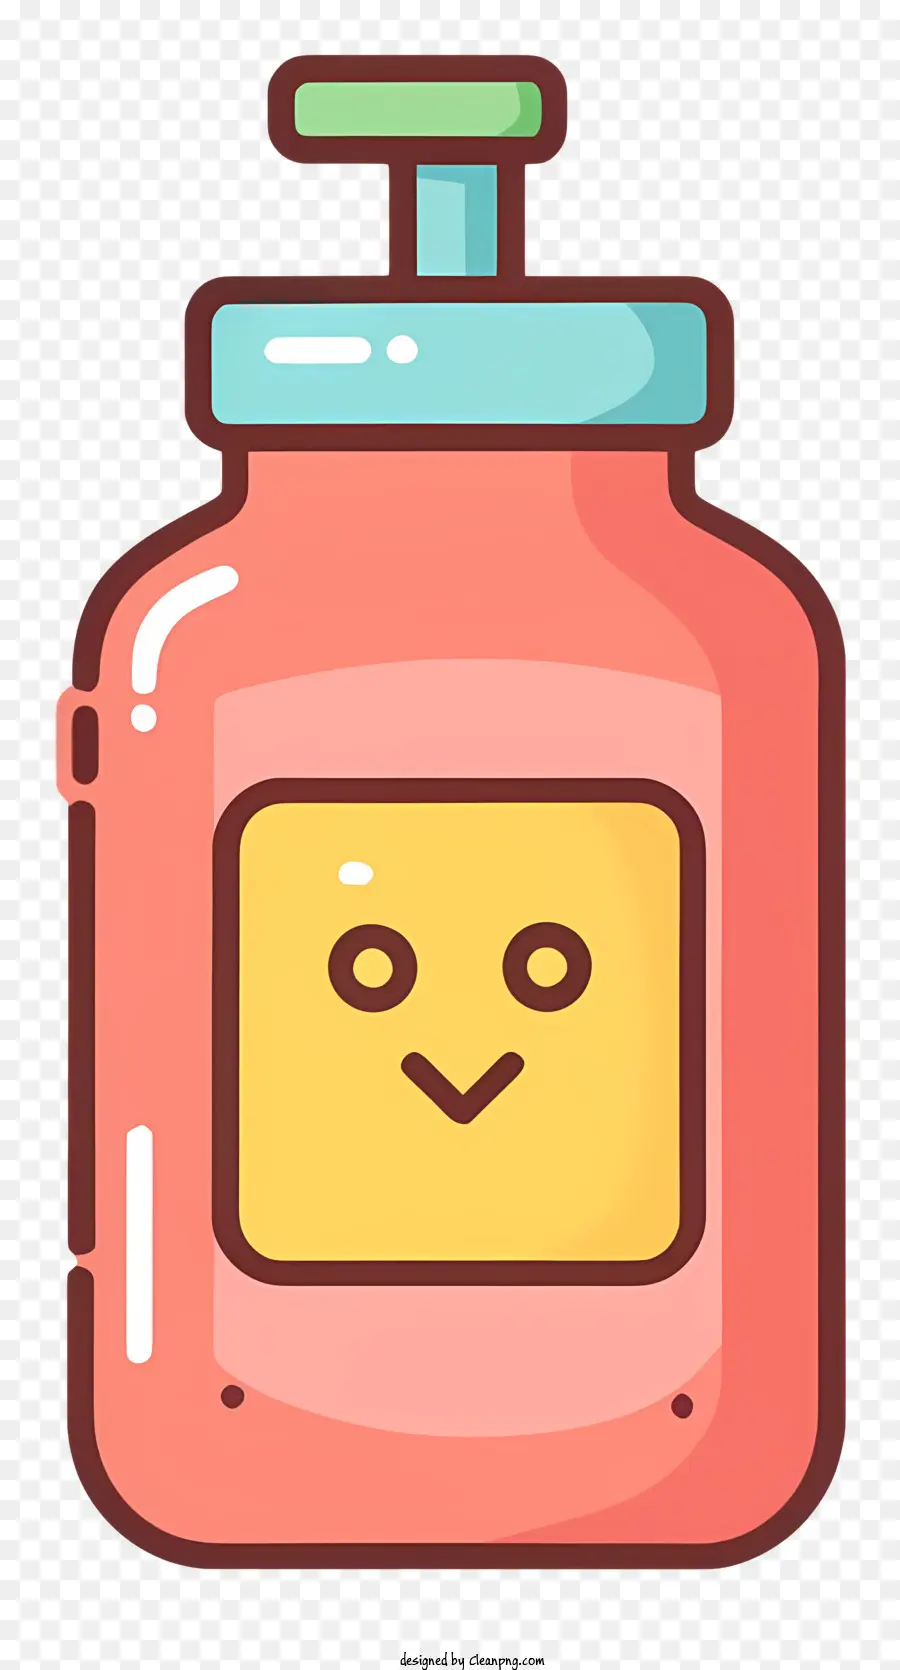 Cartoon Jar cremige Substanz rosa lächelndes Gesicht - Lächelnder Gesichtsglas mit rosa cremige Substanz